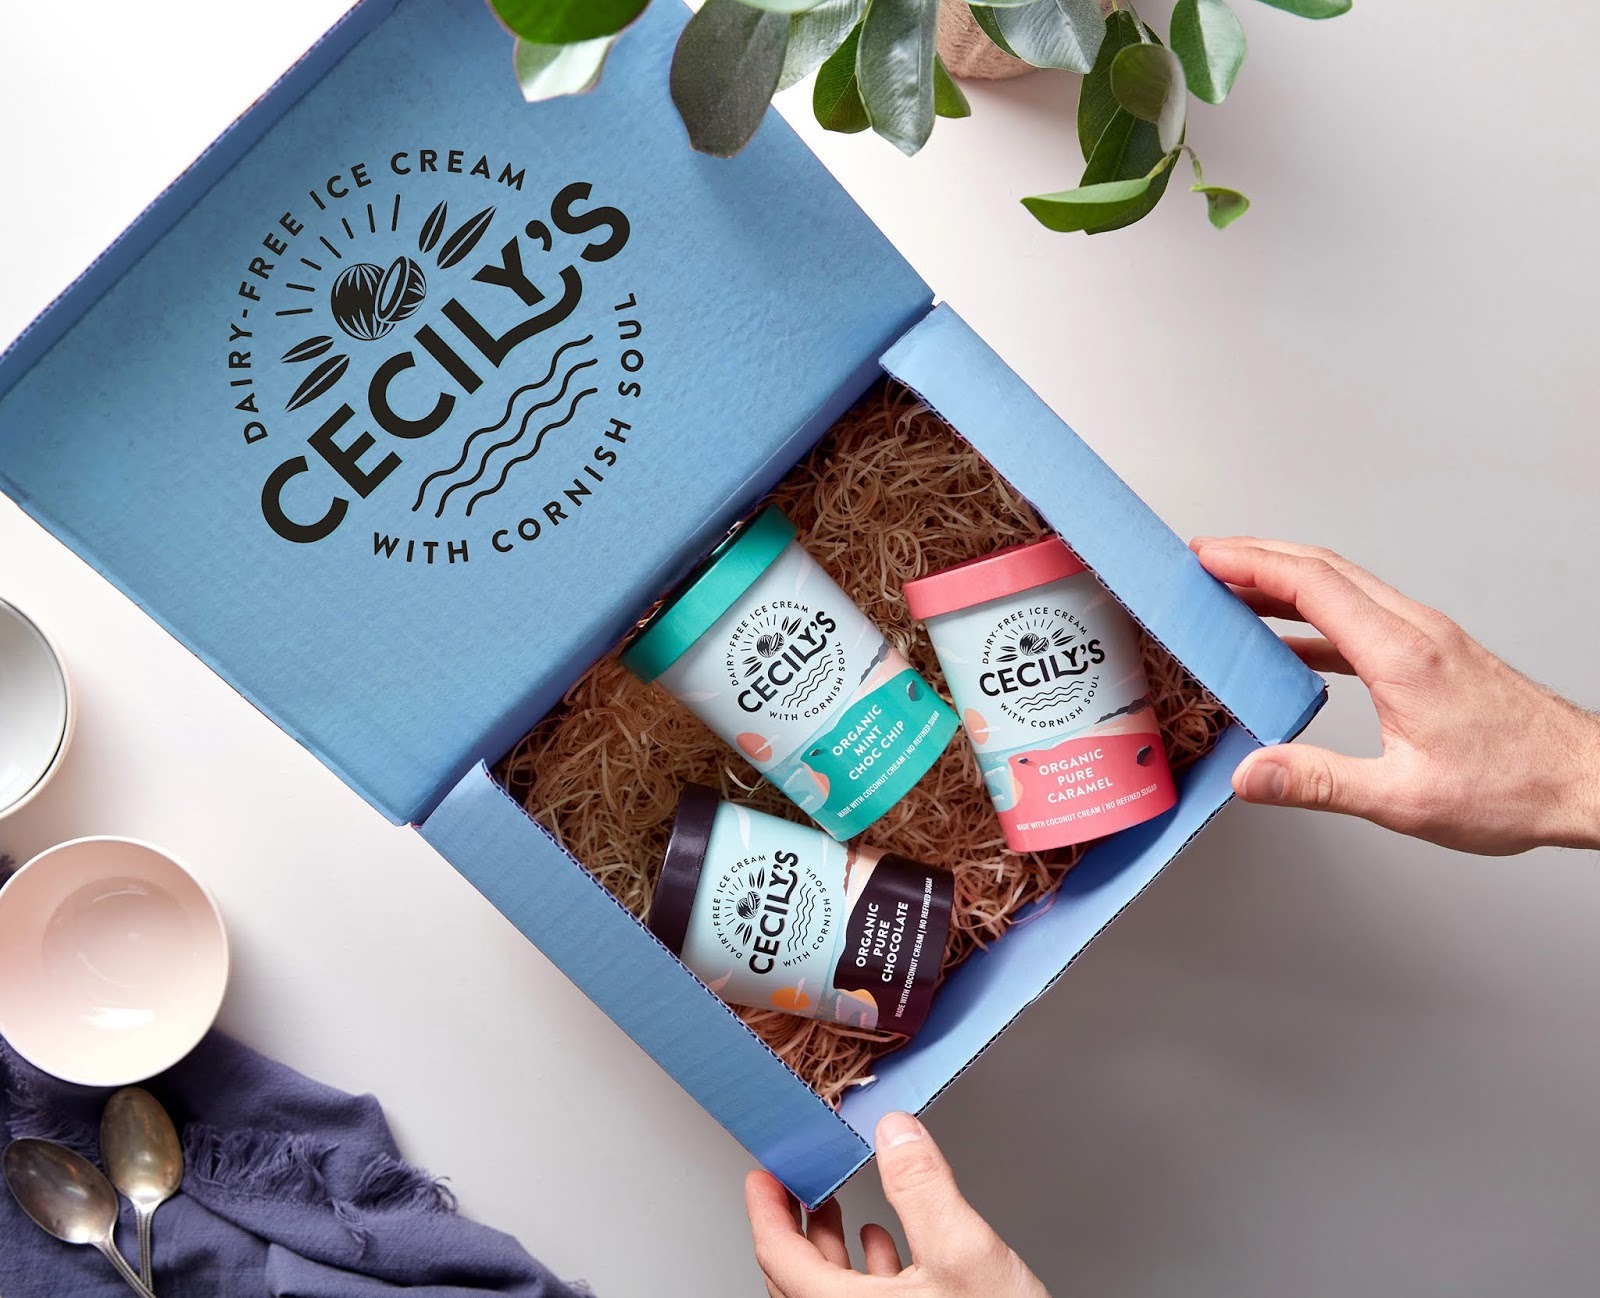 Cecily's冰淇淋品牌包装设计